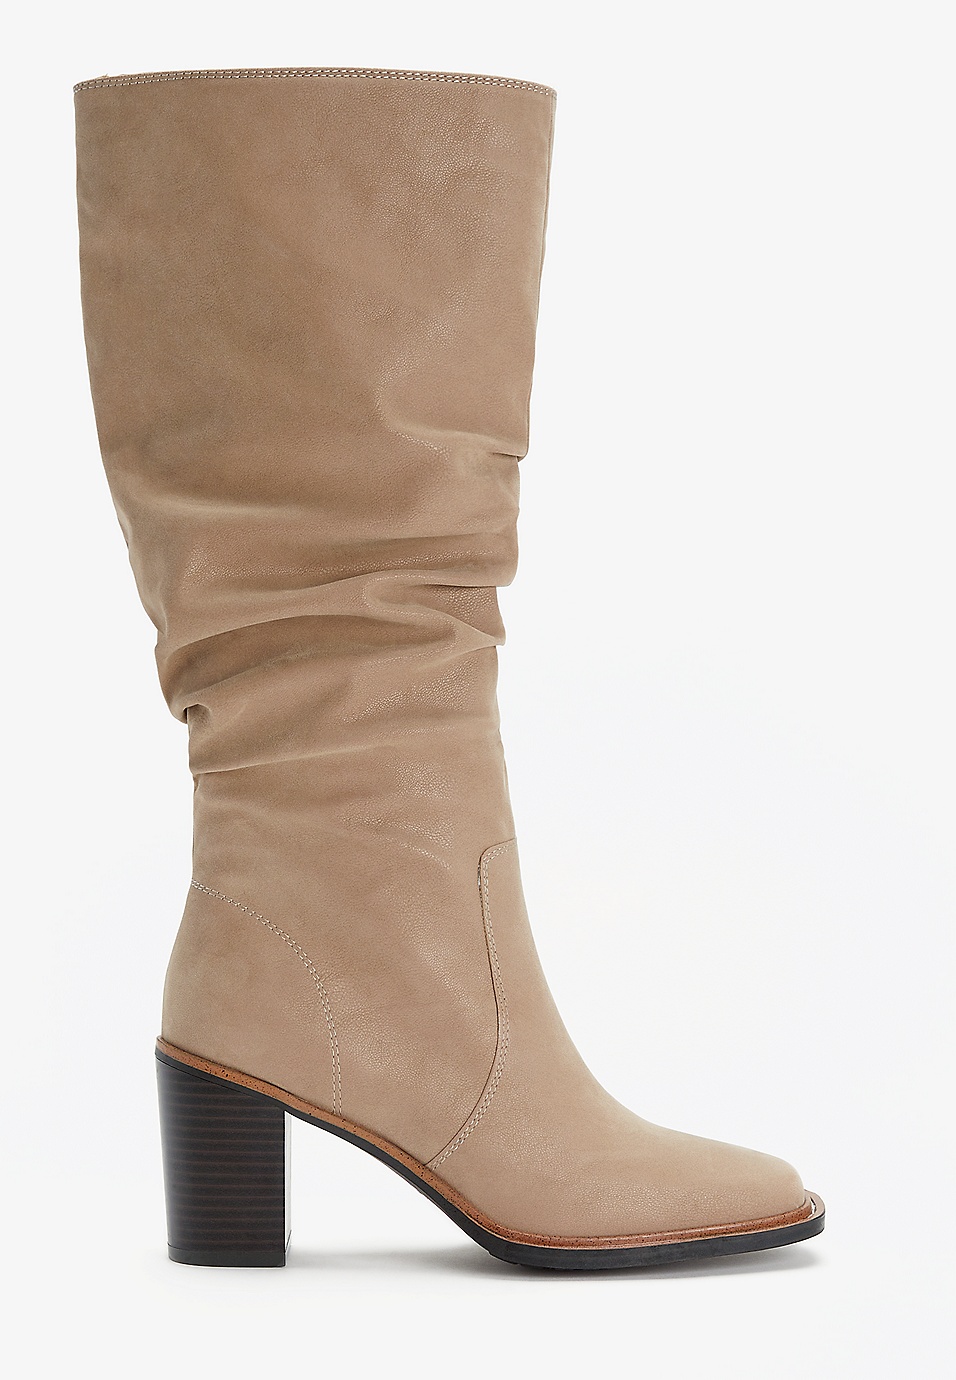 Women's Knee High Boots, Tall Boots